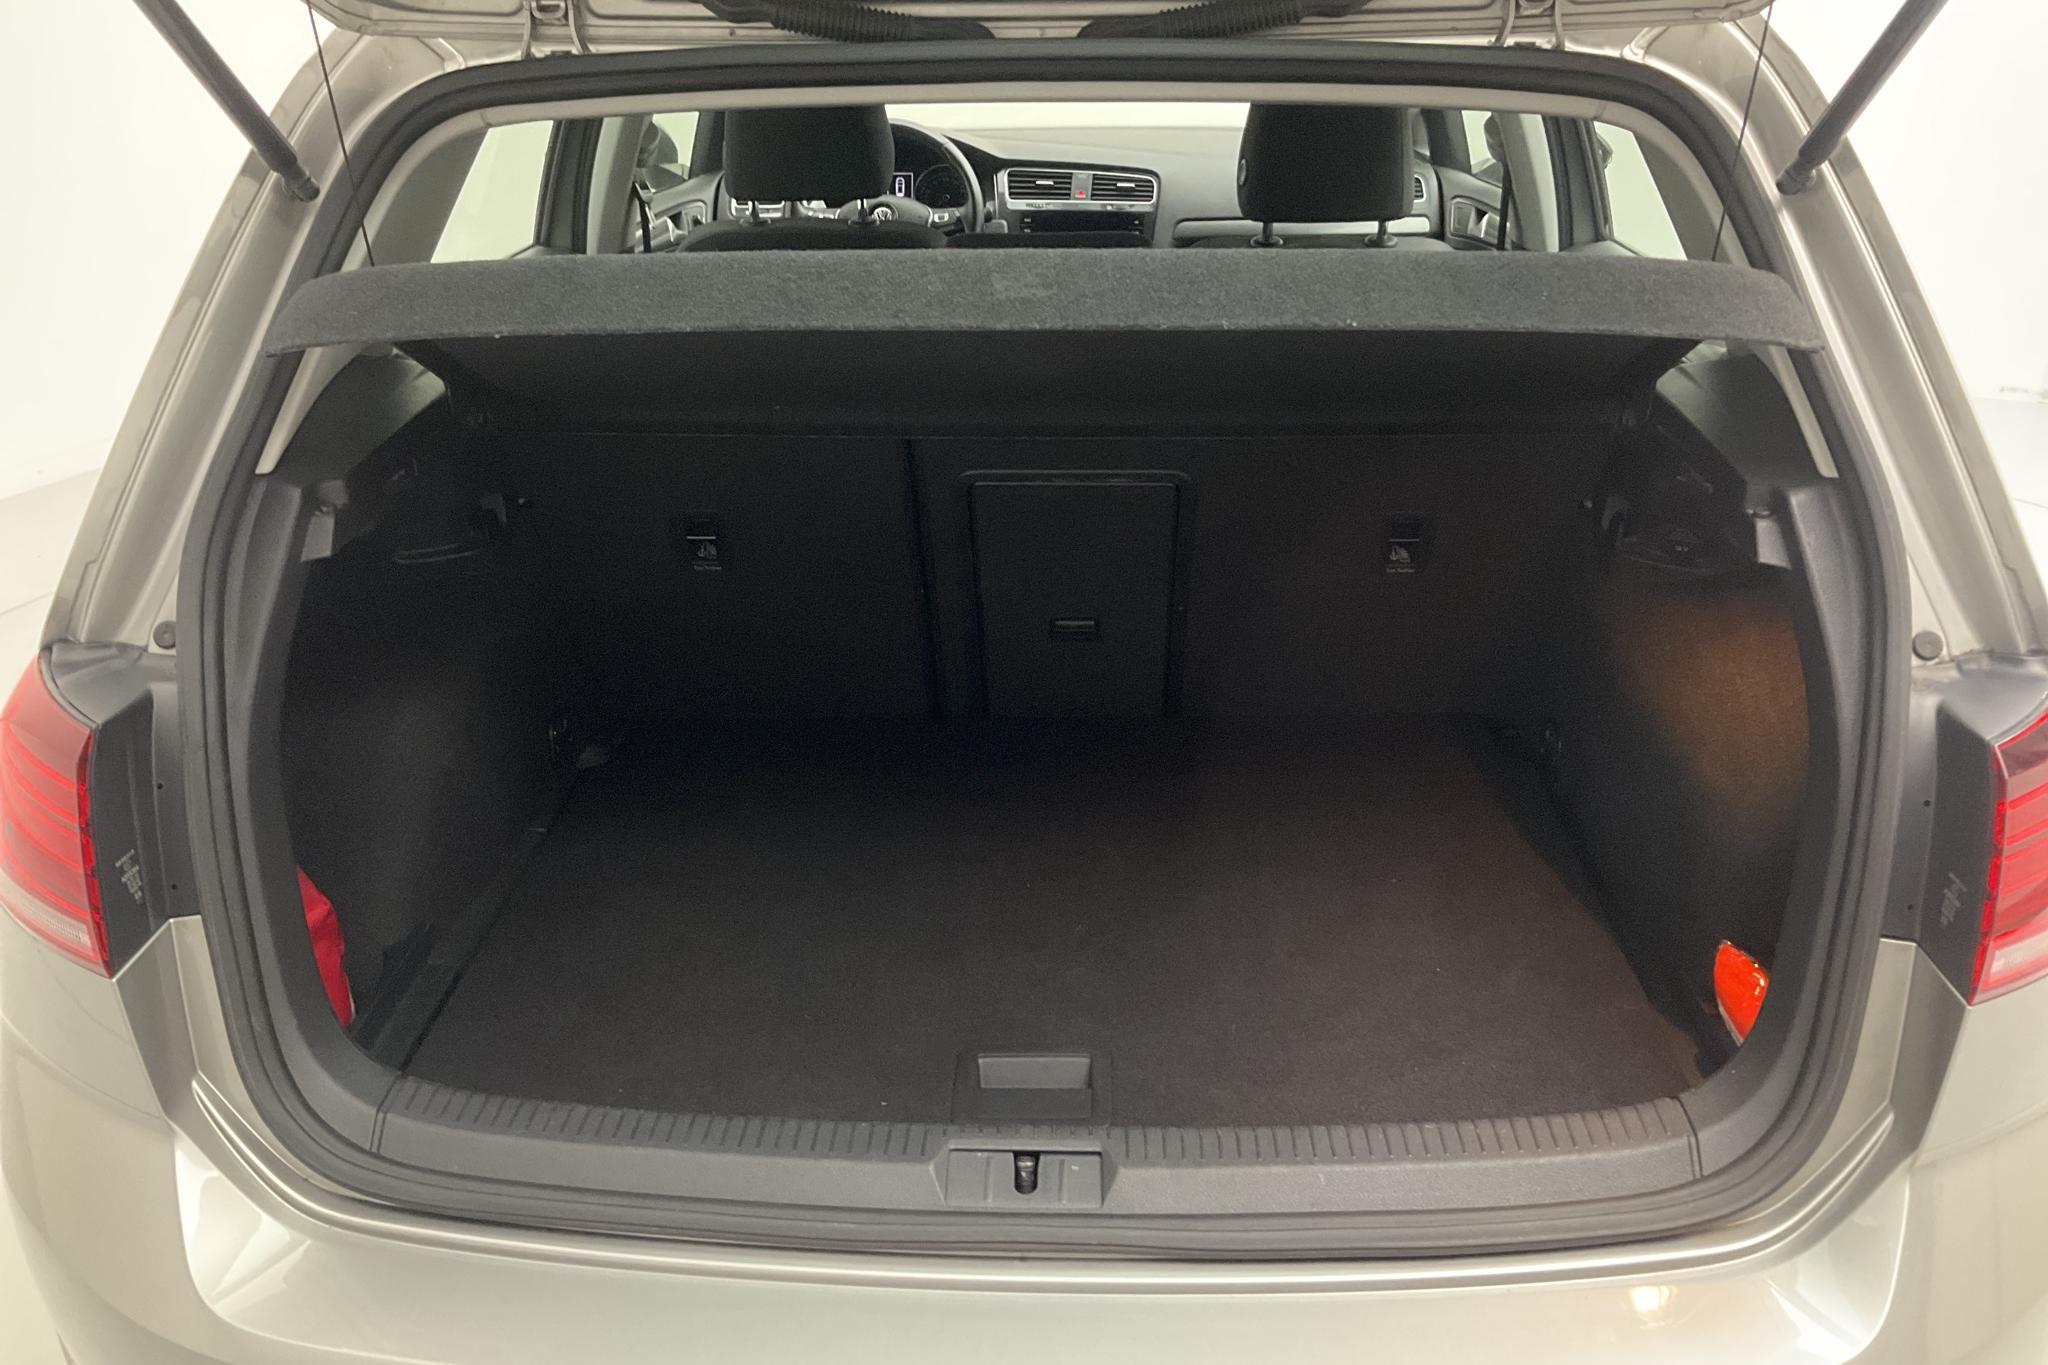 VW Golf VII 1.0 TSI 5dr (110hk) - 9 567 mil - Automat - silver - 2018